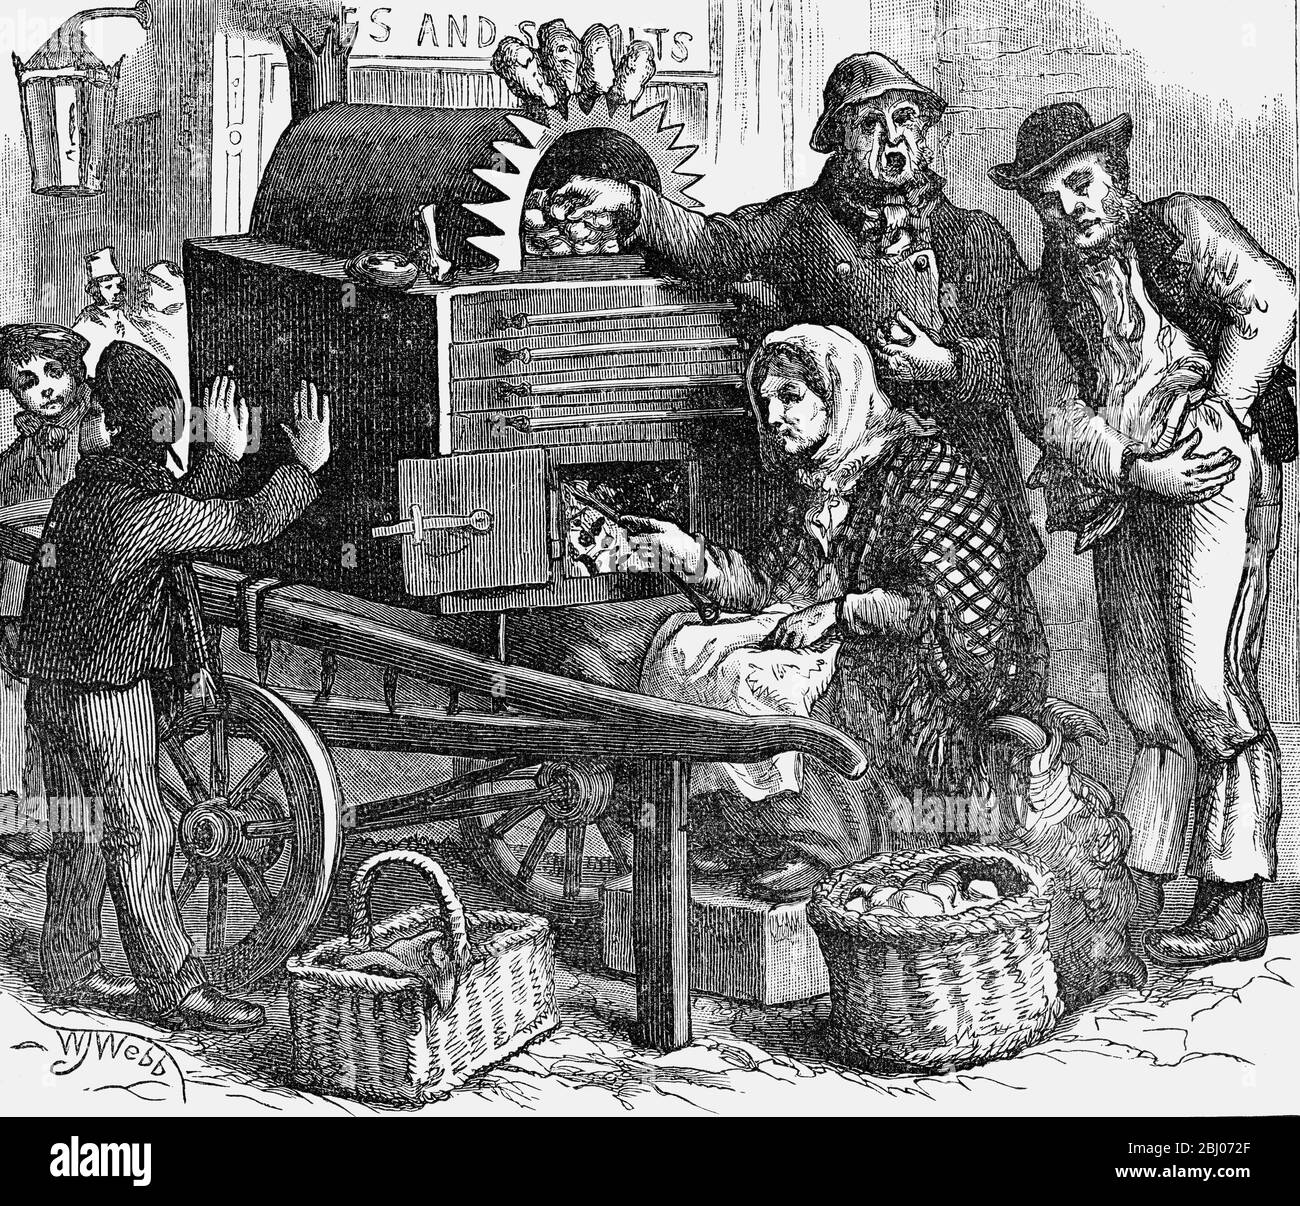 L'alba del venditore di patate di giorno - - 1887 ottobre - - ' patate calde ! ' - - Foto Stock